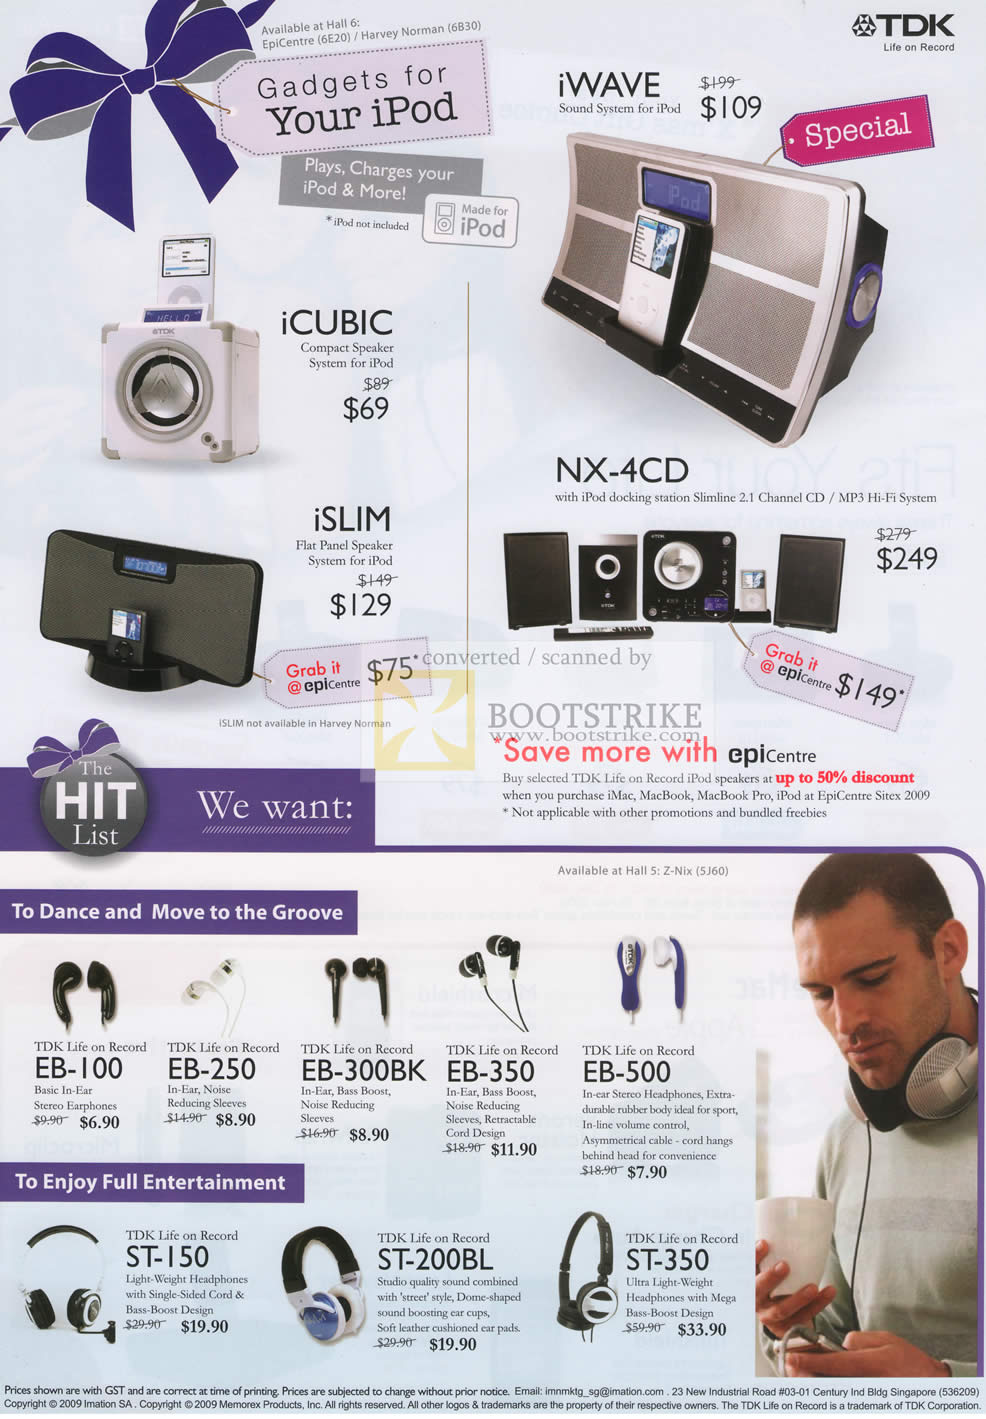 Sitex 2009 price list image brochure of TDK IWave Speakers ICubic ISlim NX 4CD Earphones Headsets